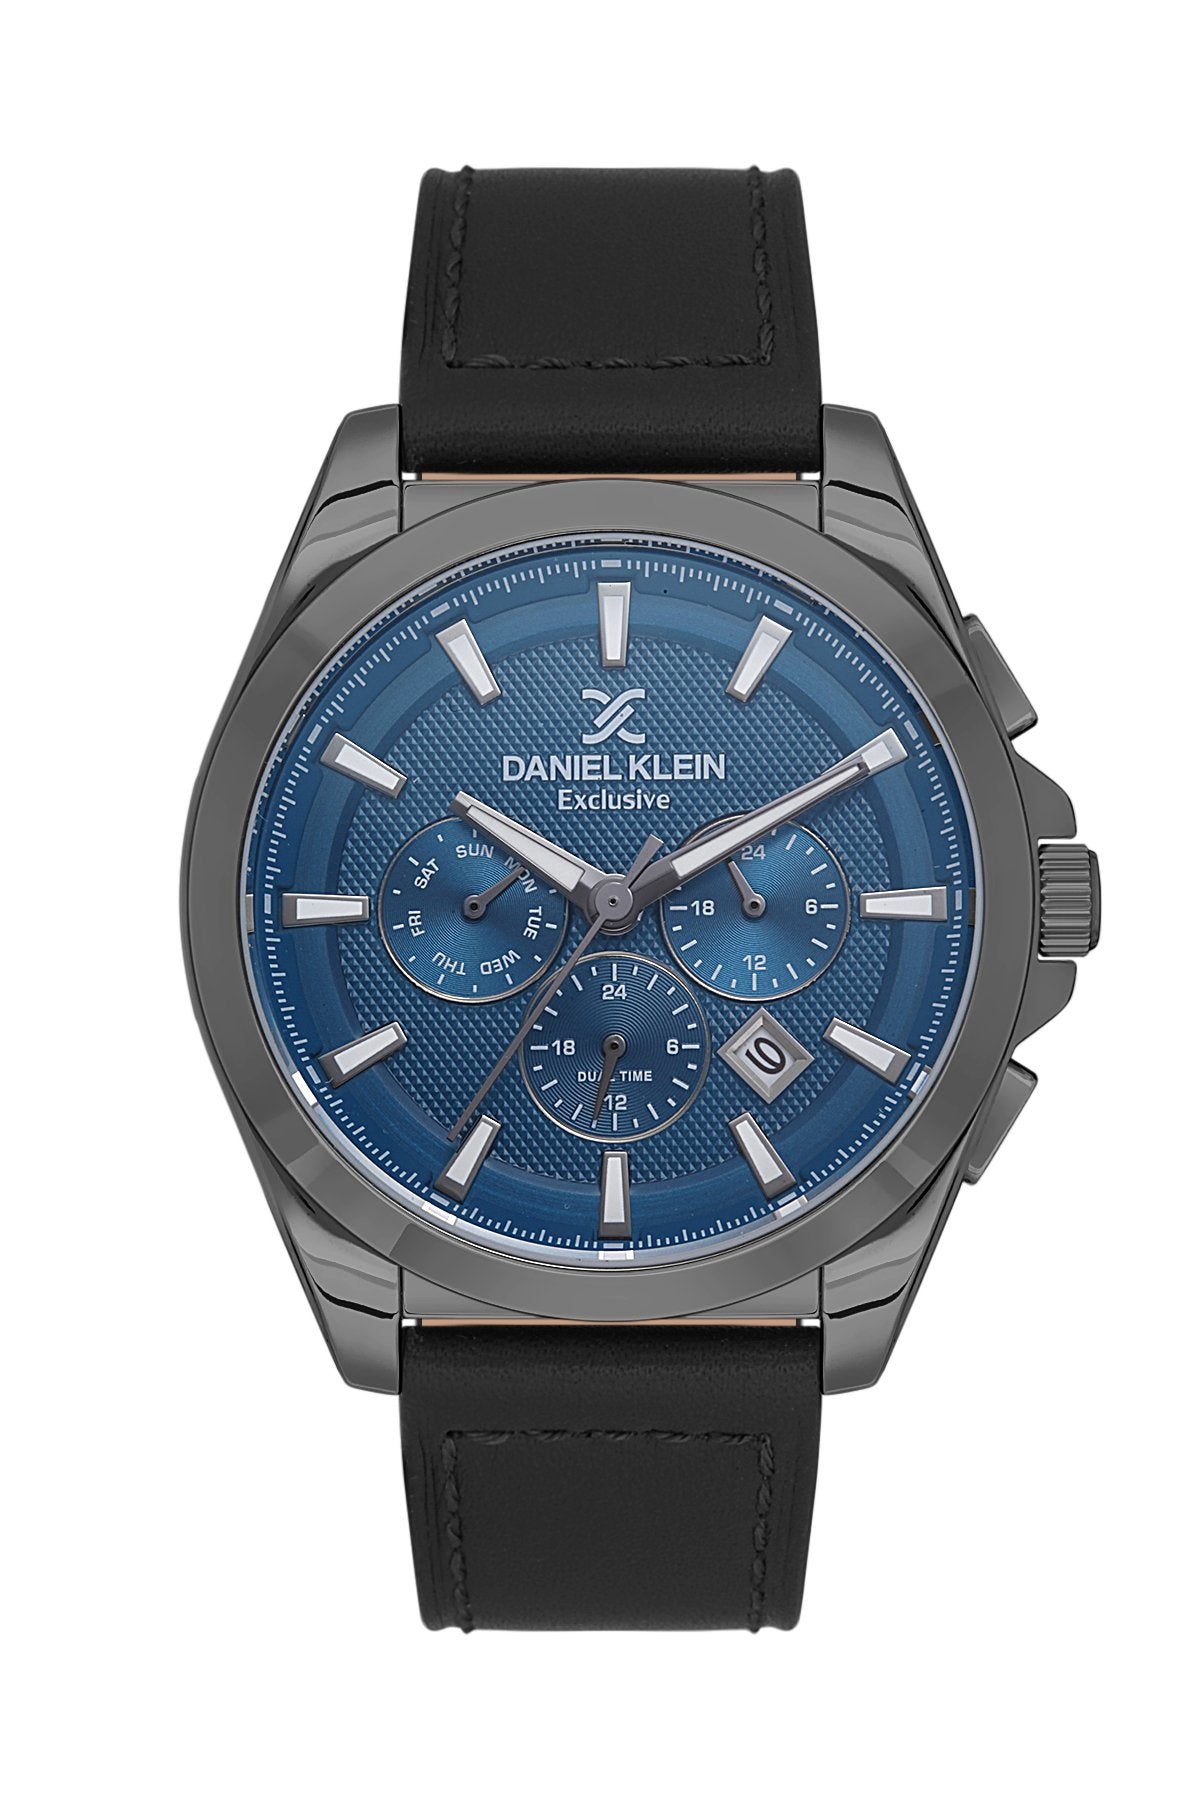 Luxury-Redefined: DK1.13530-5--Men's-Watch-by-Daniel Klein-|-Takreem-Limited-Edition - #shoLuxury-Redefined: DK1.13530-5--Men's-Watch-by-Daniel Klein-|-Takreem-Limited-Editionp_name#Luxury-Redefined: DK1.13530-5--Men's-Watch-by-Daniel Klein-|-Takreem-Limited-EditionWatchDaniel KleinTakreem.joDK.1.13530-58.68E+12BlackLeatherMenLuxury-Redefined: DK1.13530-5--Men's-Watch-by-Daniel Klein-|-Takreem-Limited-Edition